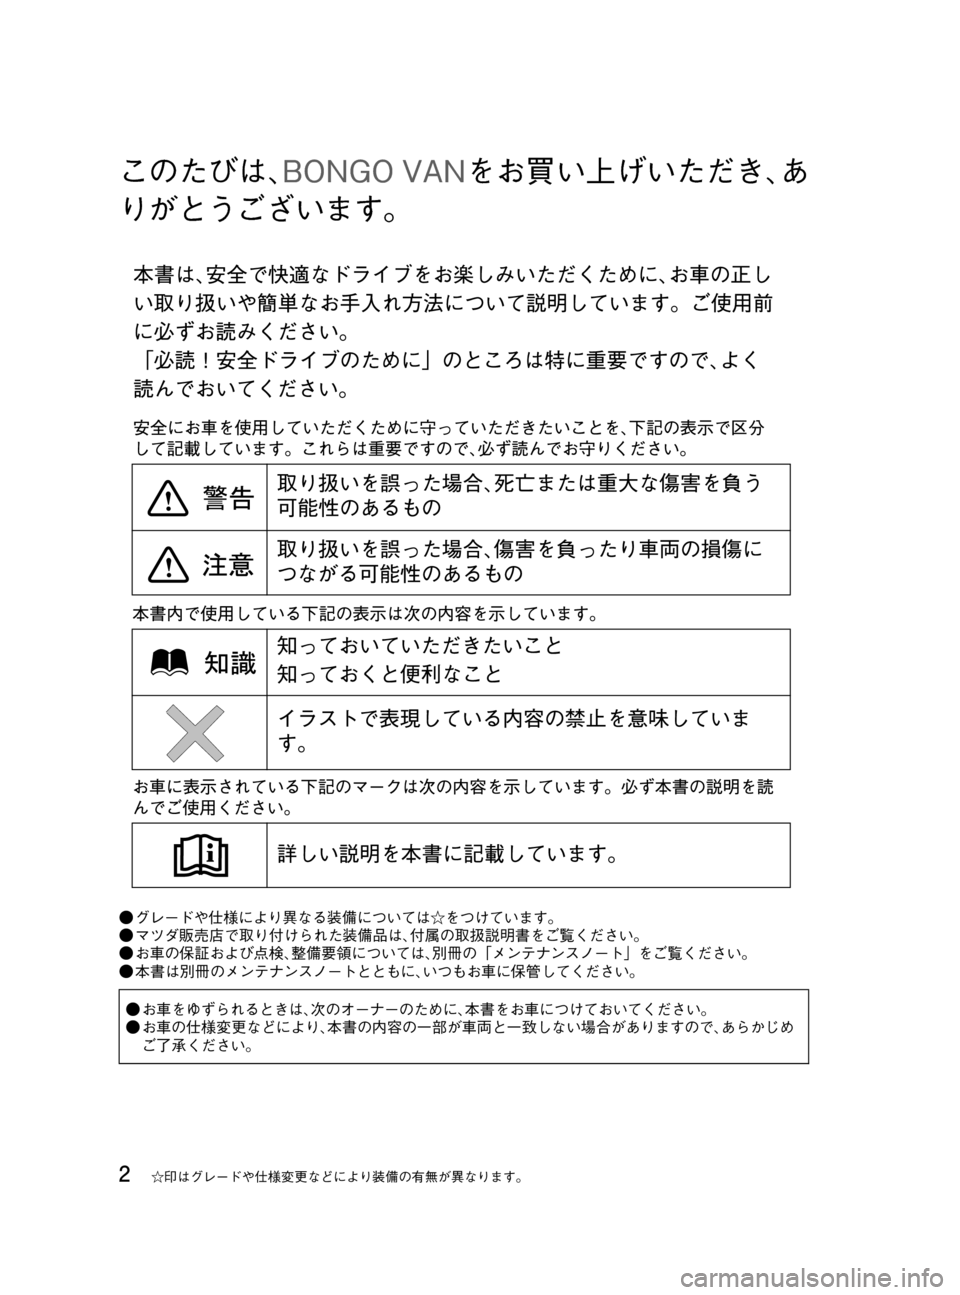 MAZDA MODEL BONGO VAN 2016  取扱説明書 (in Japanese) Black plate (2,1)
このたびは､BONGO VANをお買い上げいただき､あ
りがとうございます。
●グレードや仕様により異なる装備については☆をつけています